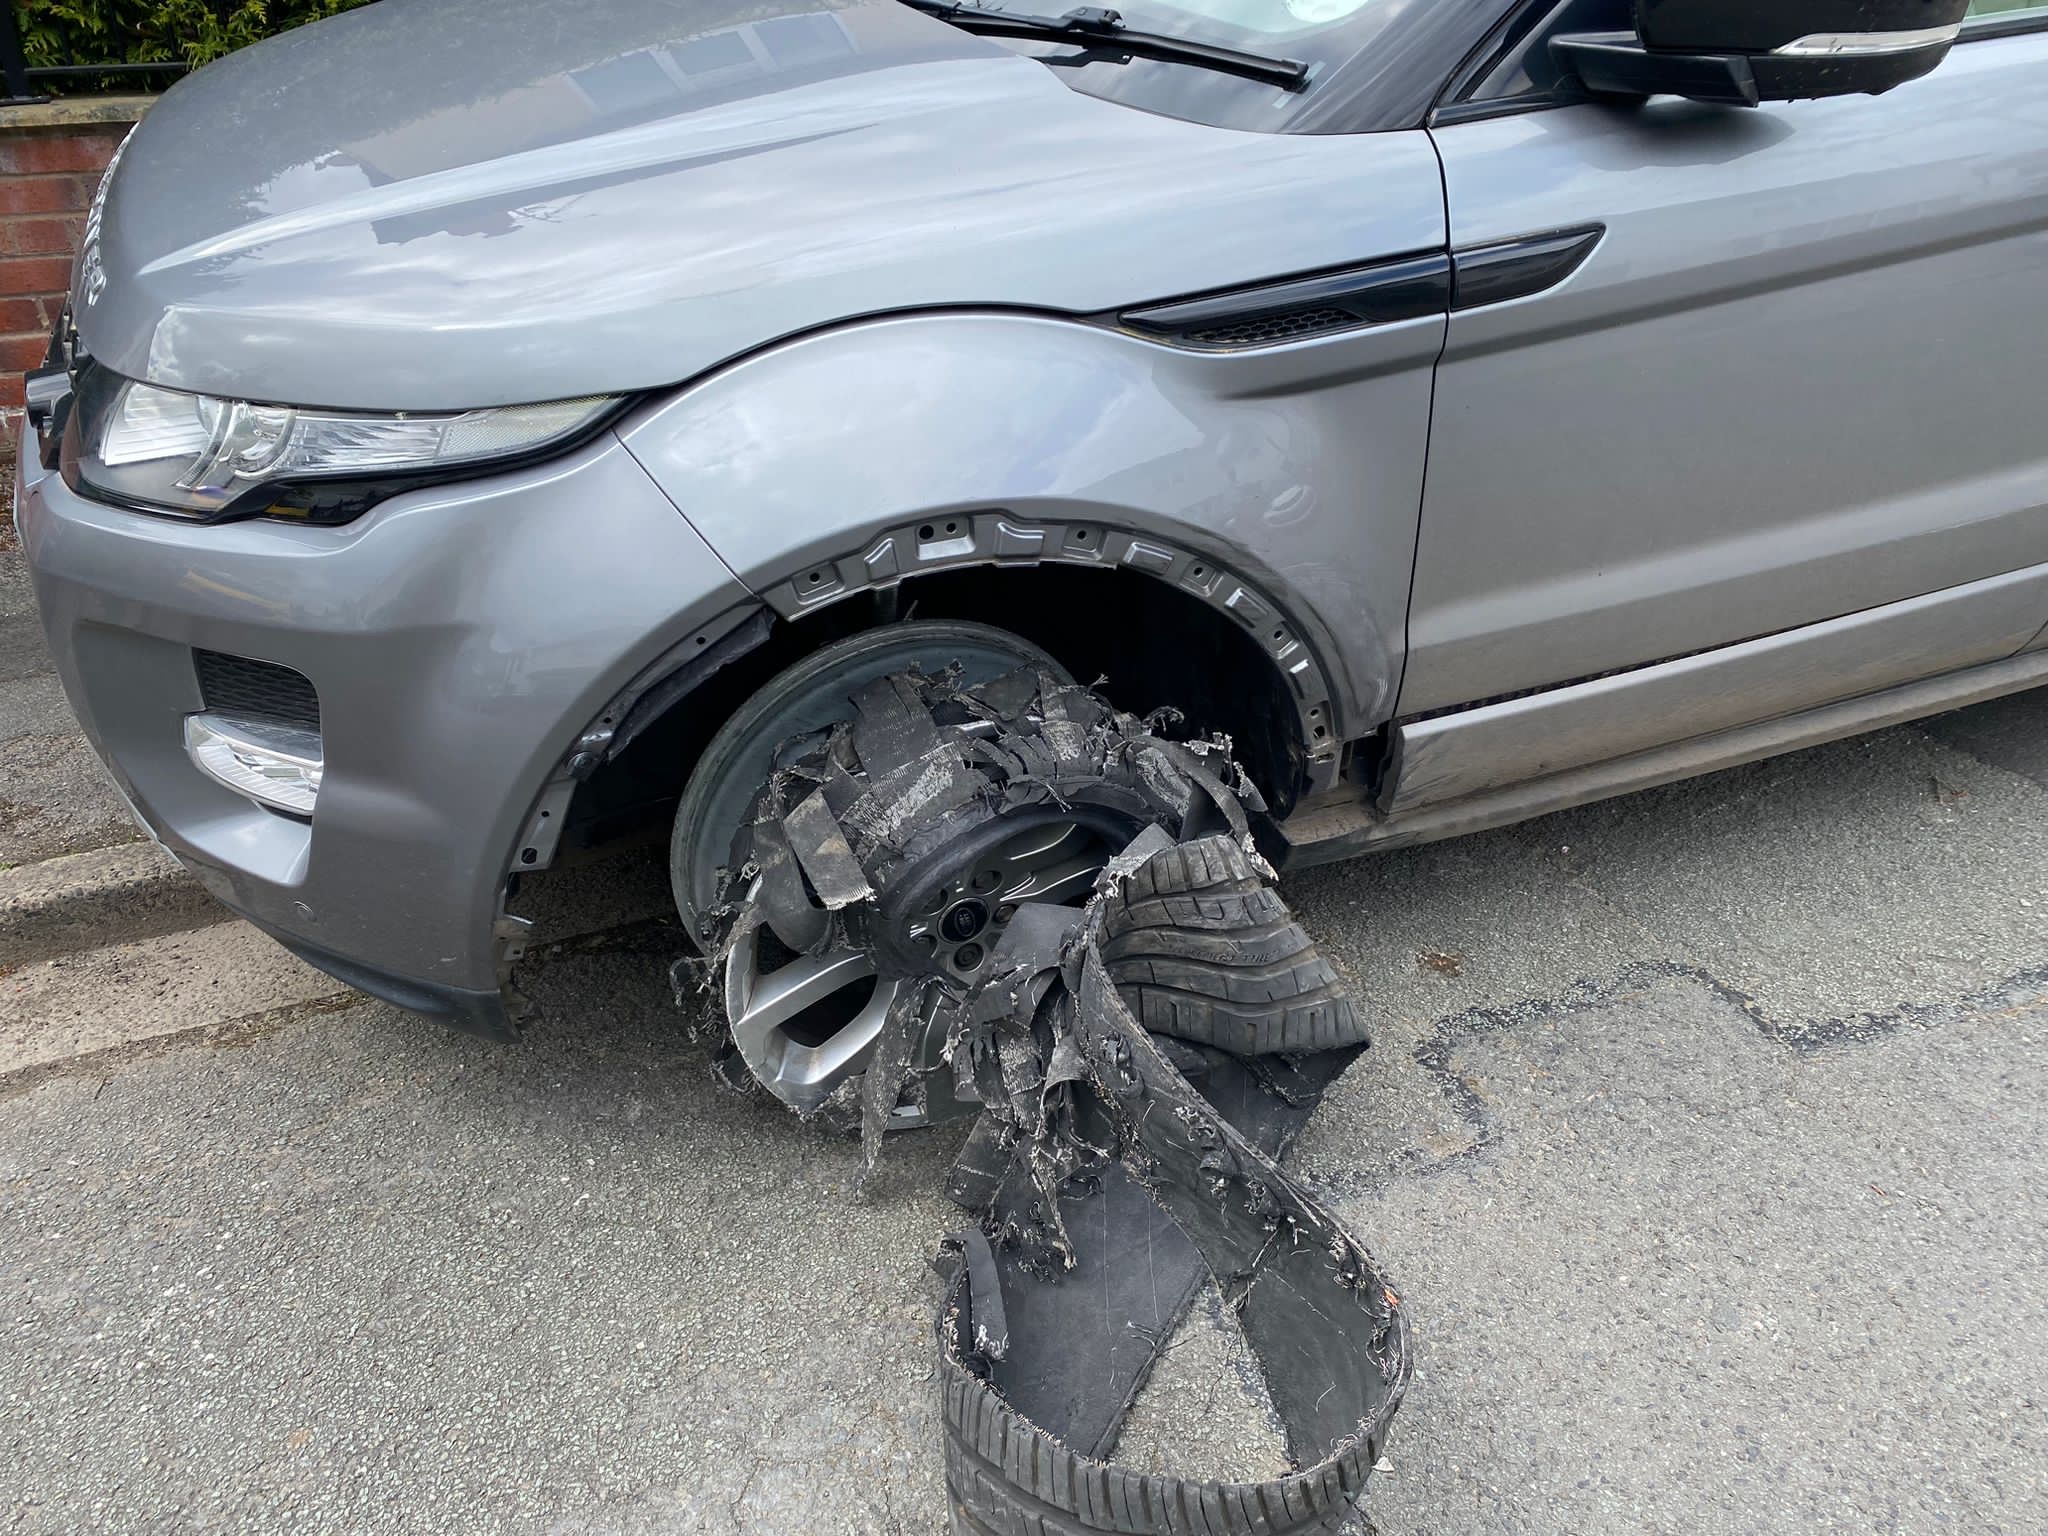 Pothole damaged wheel credit terry laughton